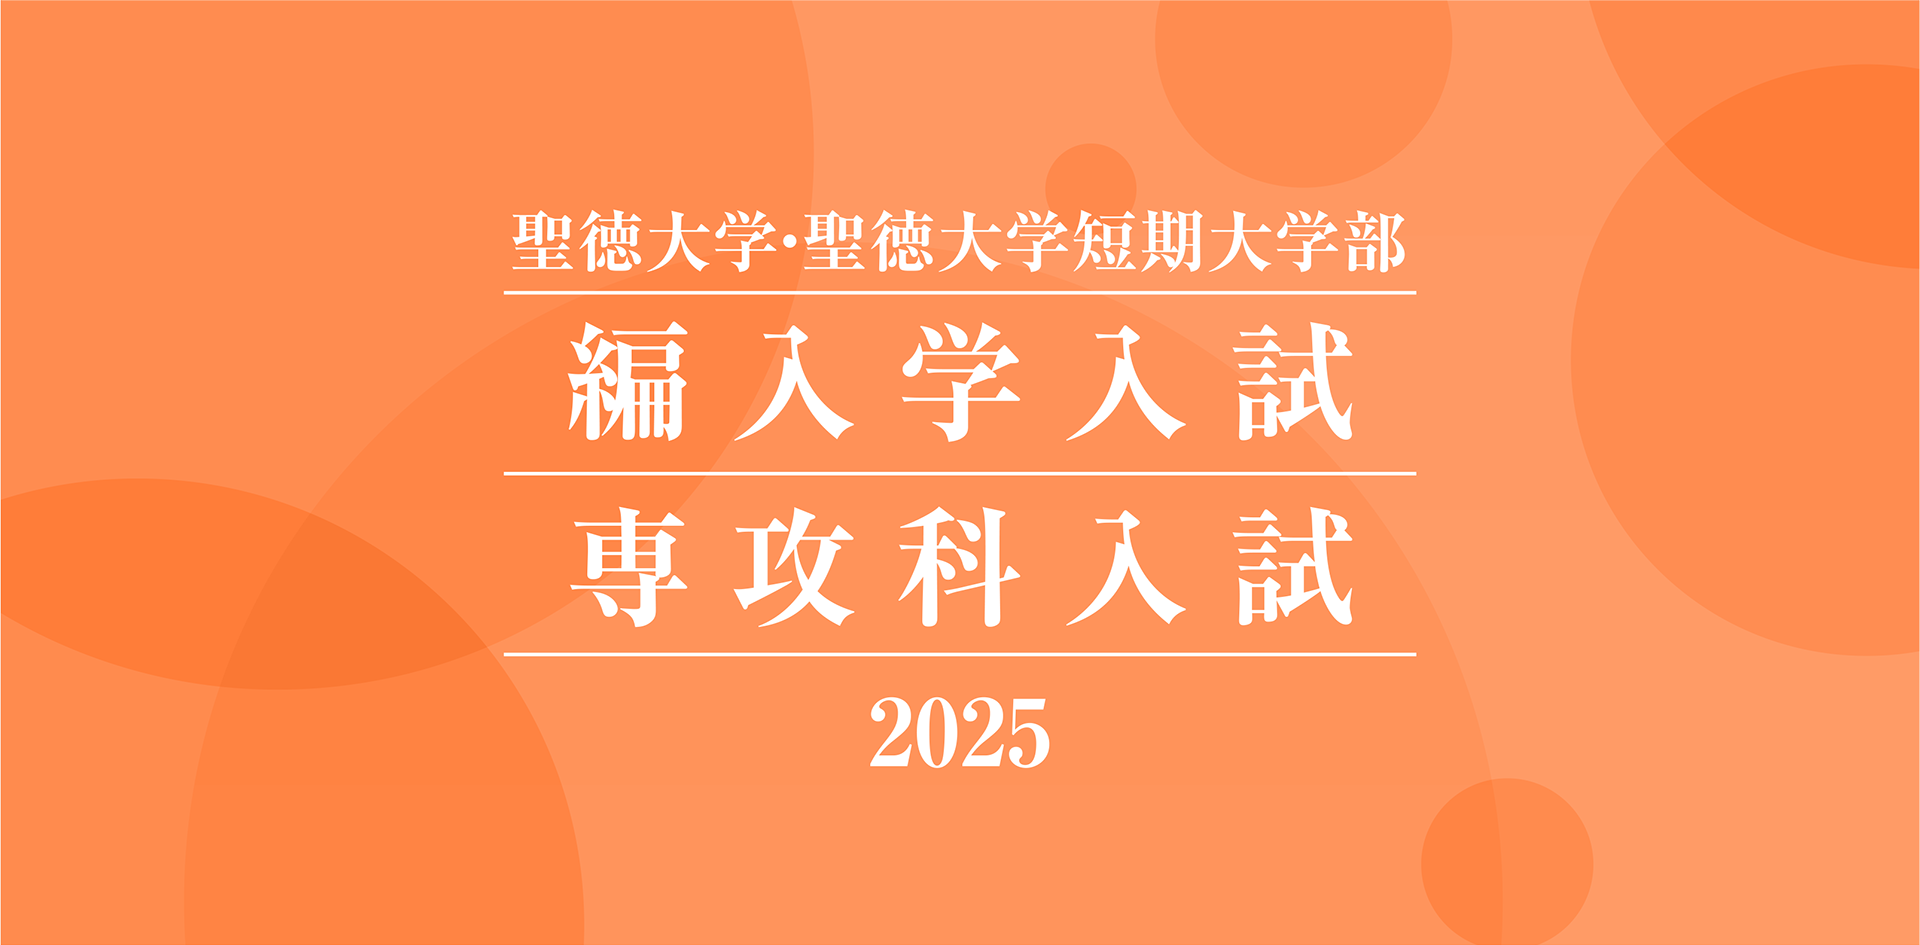 聖徳大学・聖徳大学短期大学部 編入学入試 専攻科入試 2025